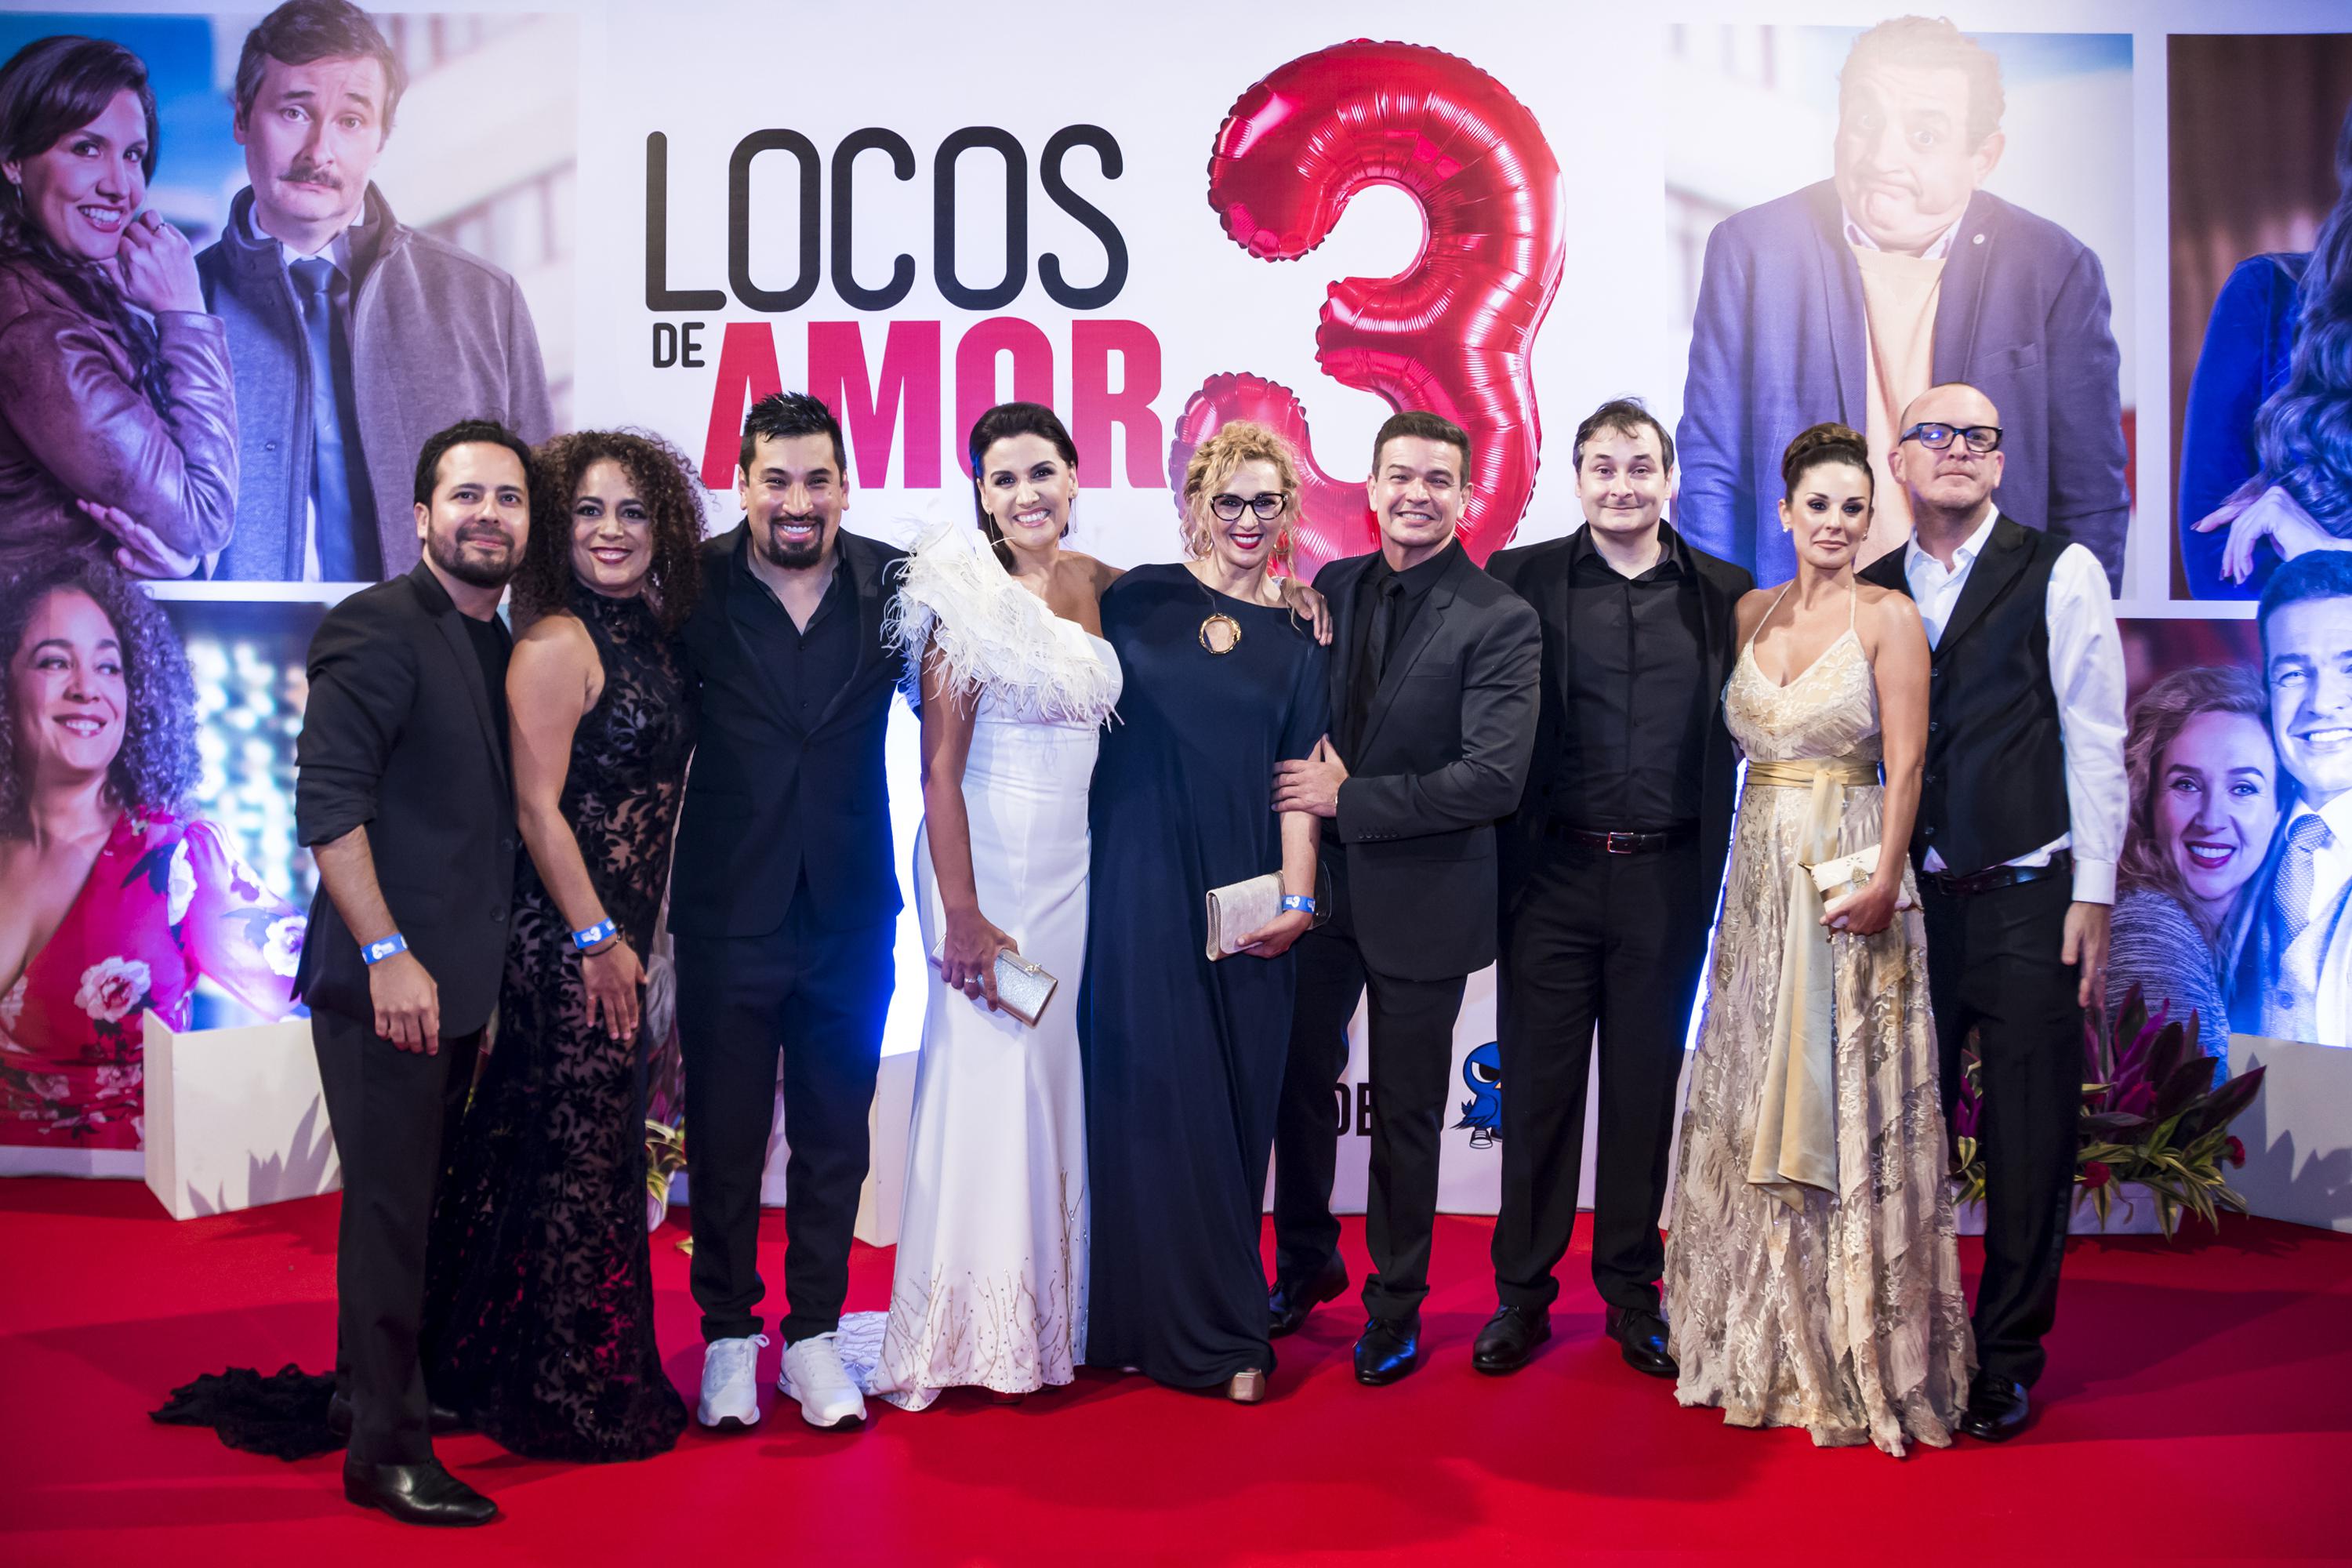 Elenco de "Locos amor 3" en la alfombra roja de la película nacional. (Foto: Tondero)